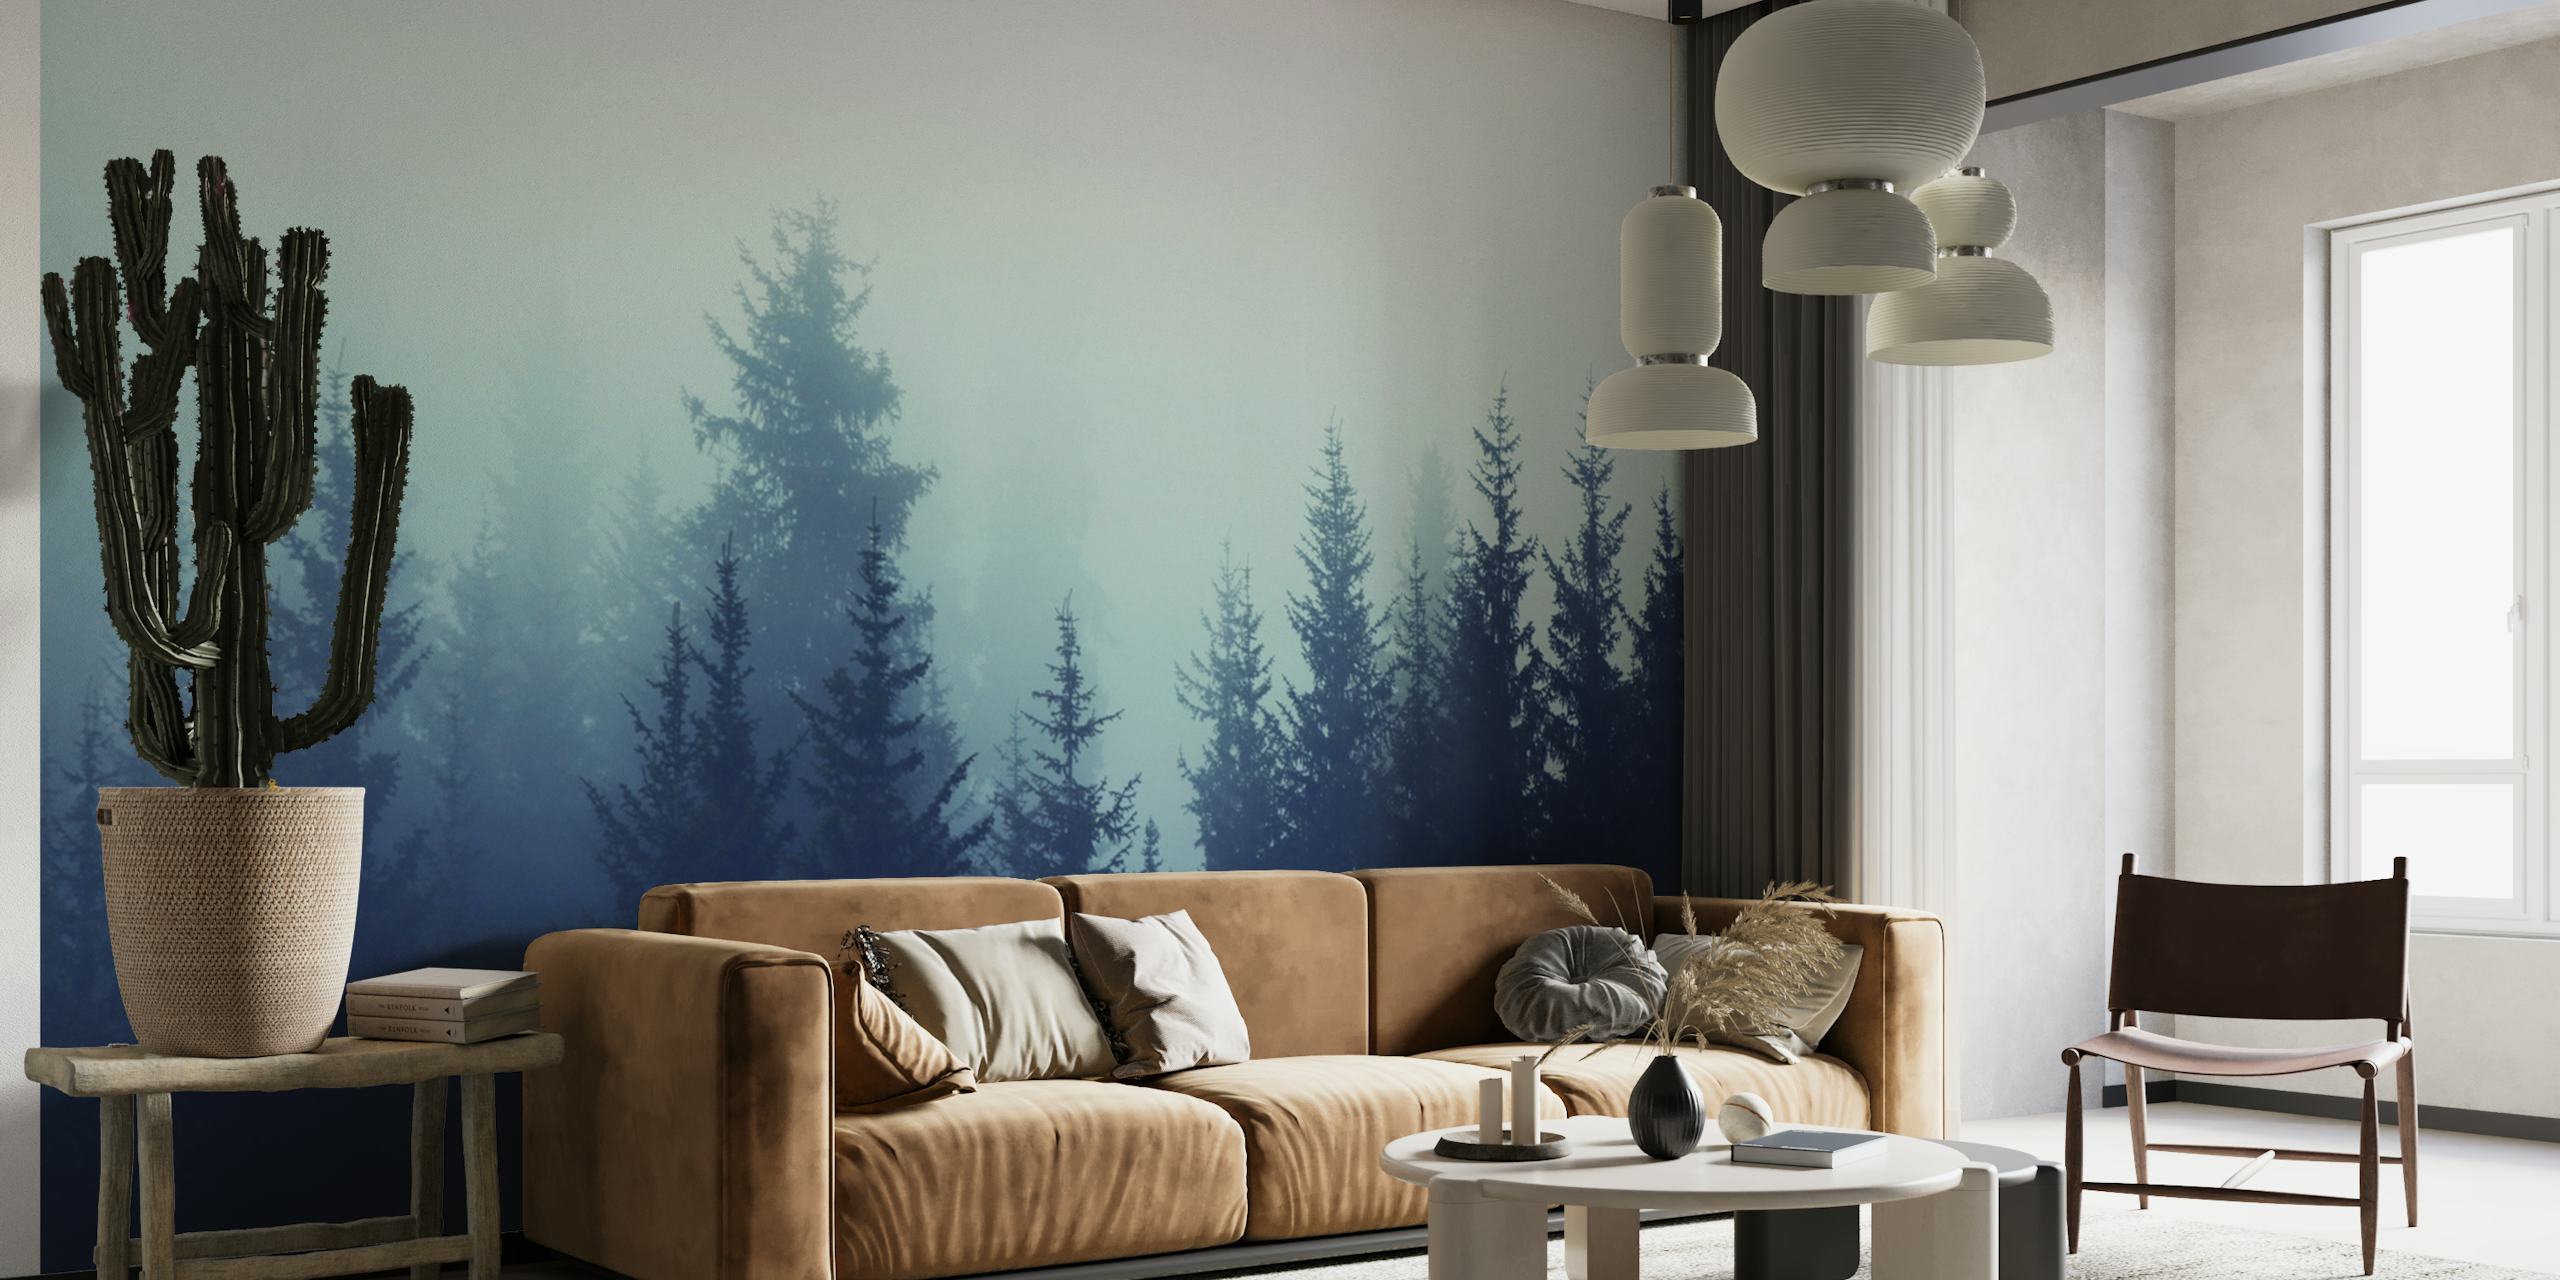 Et vægmaleri med en tåget fyrreskov i dæmpede toner.